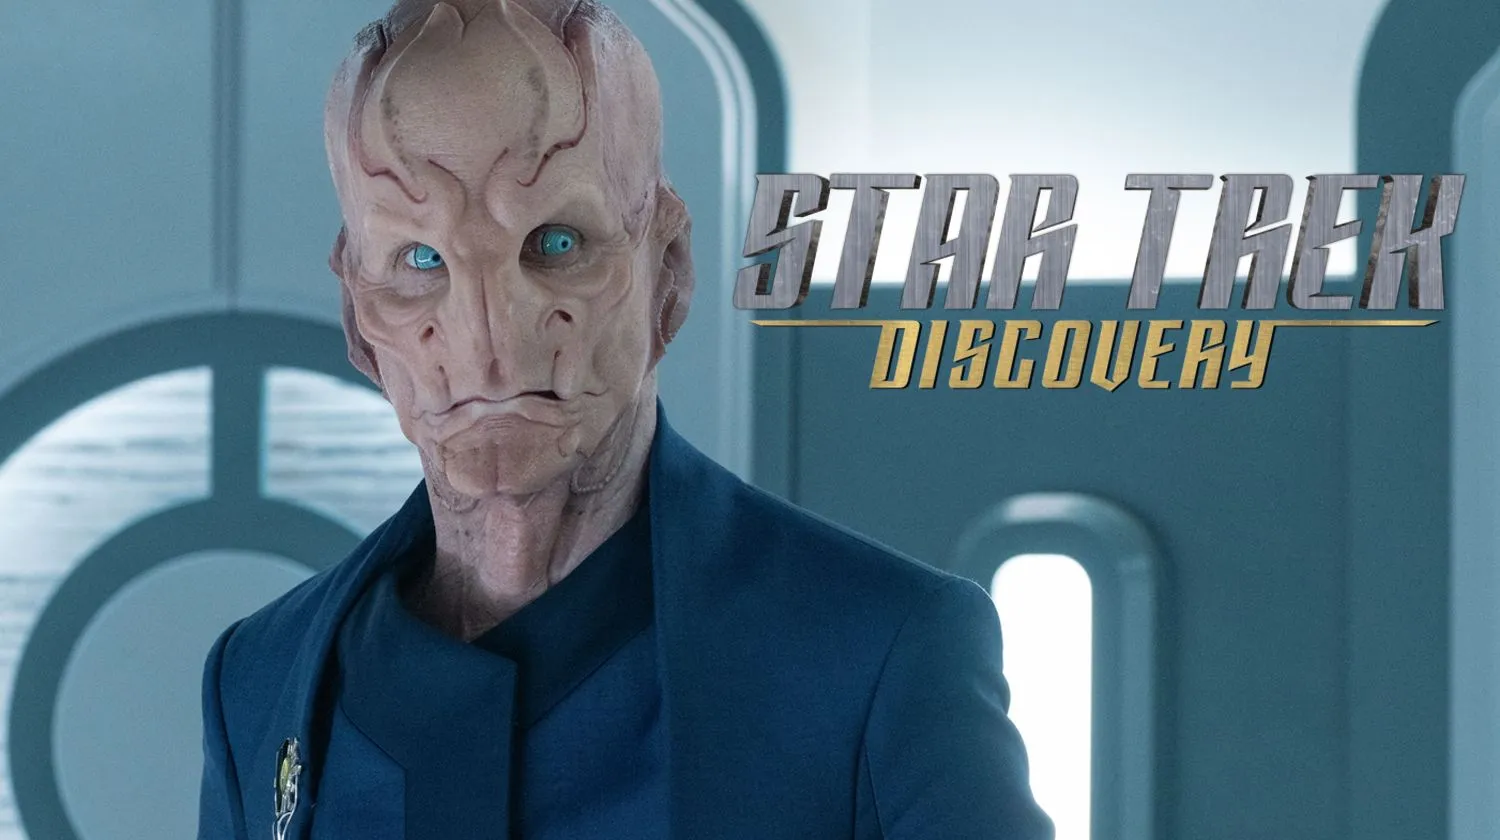 Mehr über den Artikel erfahren ‚Star Trek: Discovery‘ Staffel 5 Folge 9 bietet einen spannenden aber fragwürdigen Cliffhanger